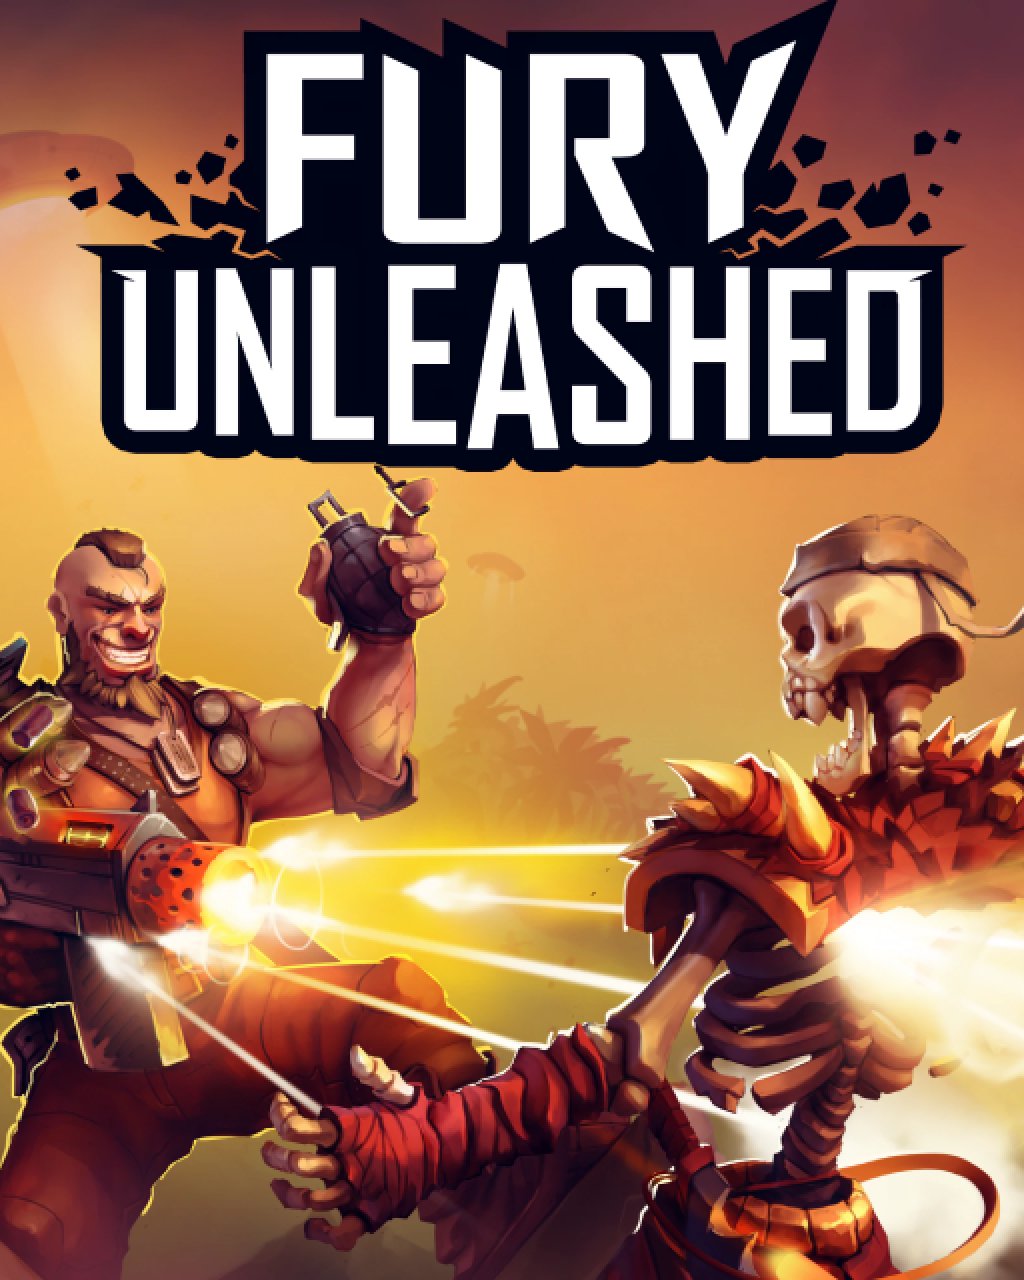 Fury Unleashed